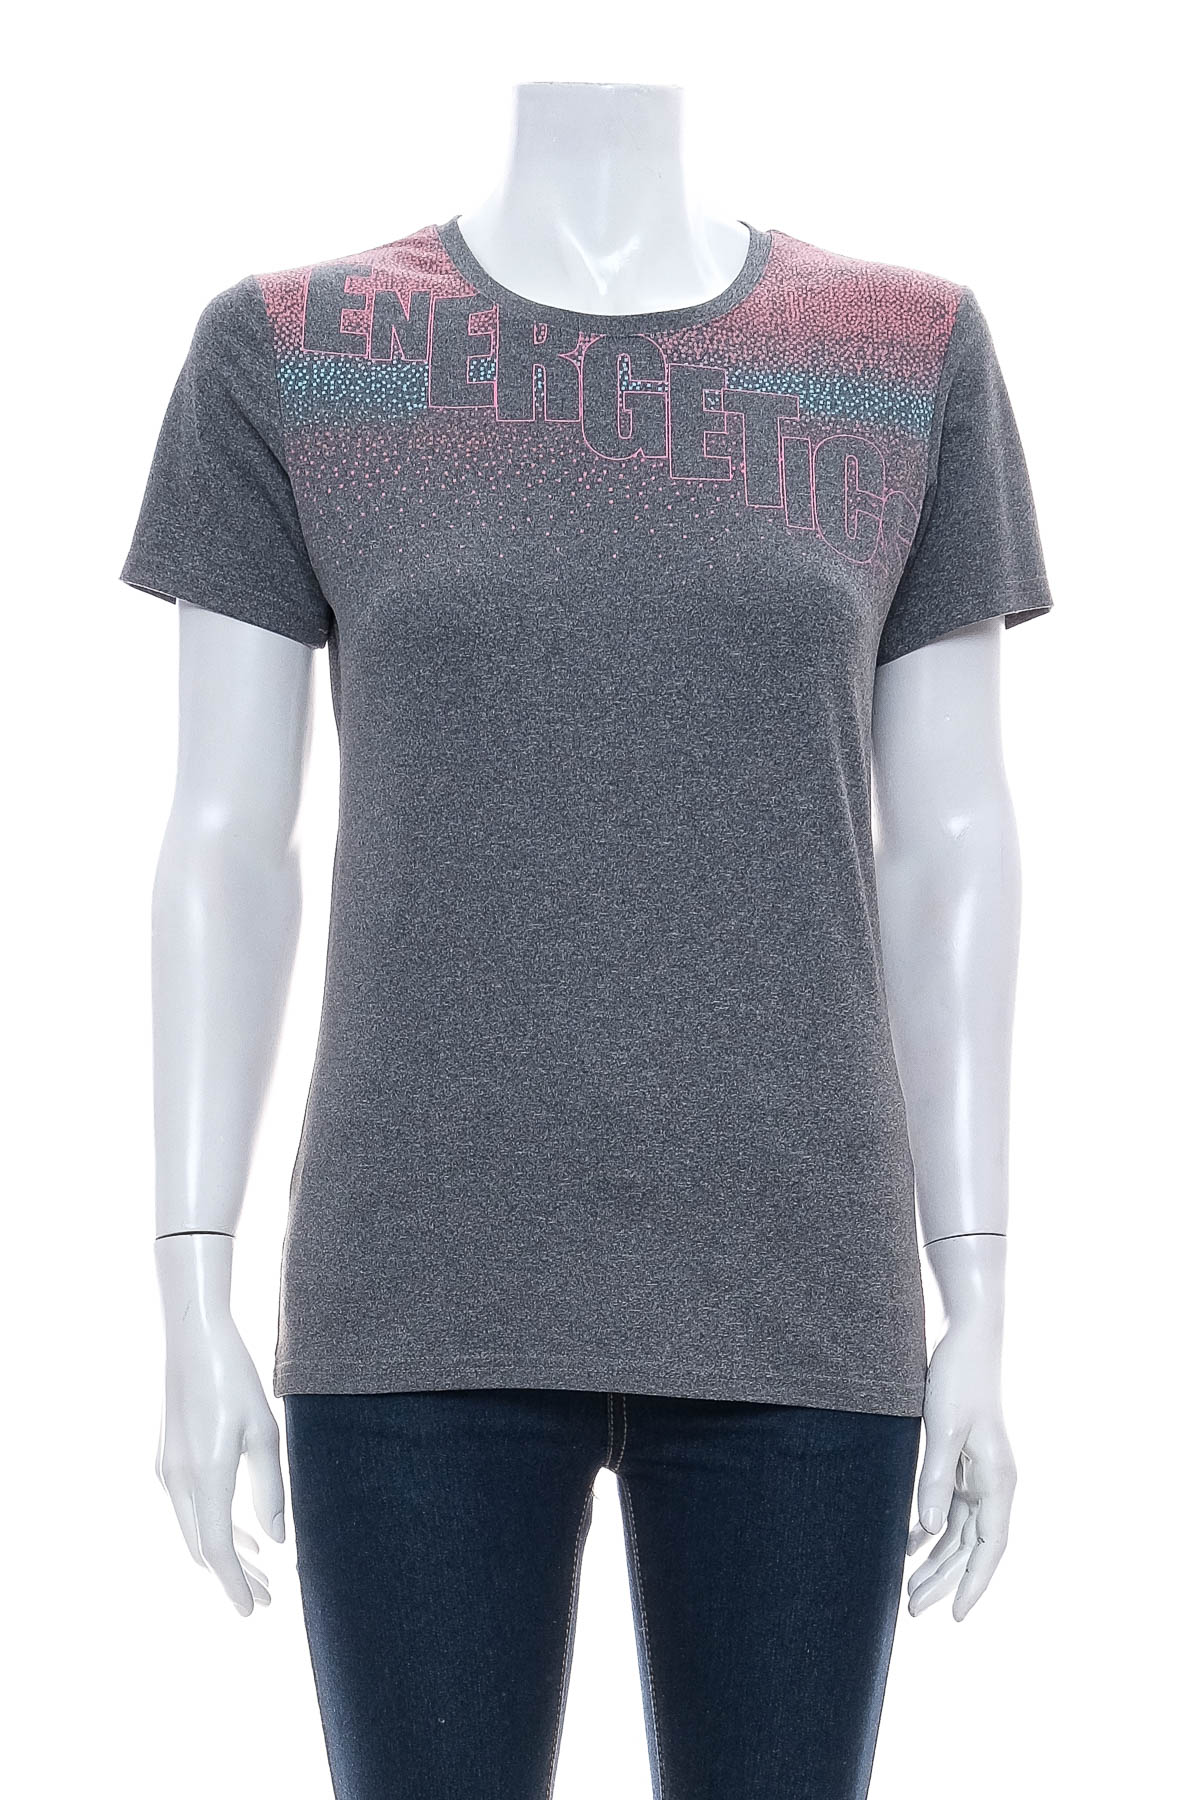 Γυναικείο μπλουζάκι - Energetics - 0